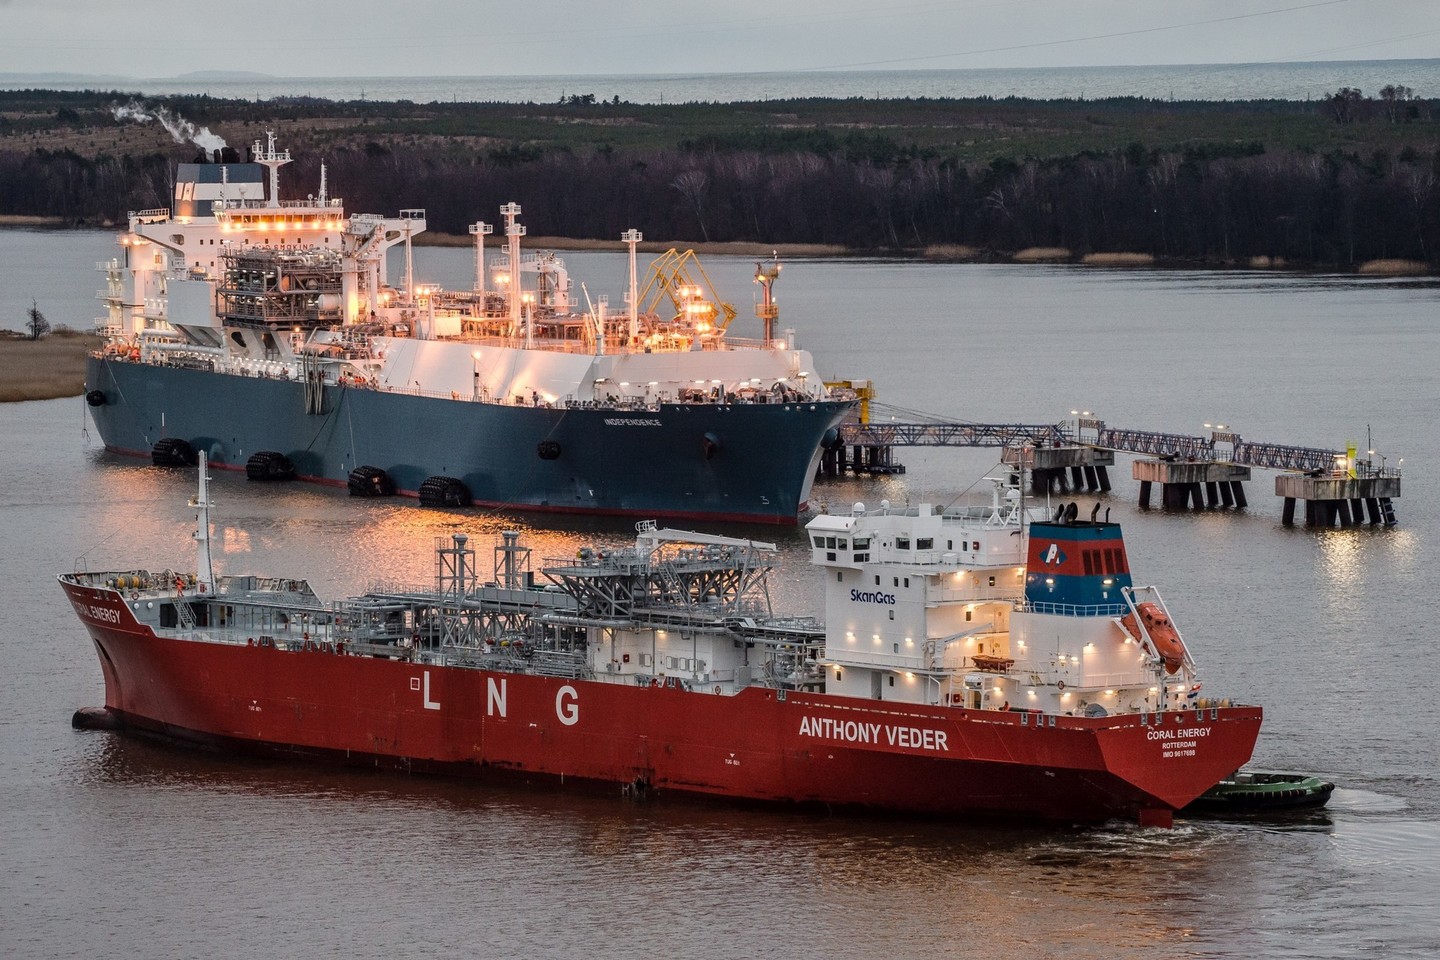 Gamtinių dujų prekybos įmonės „Lietuvos dujų tiekimas“ ir LITGAS, priklausančios valstybės valdomai „Lietuvos energijos“ grupei, bendradarbiaudamos įgyvendins jau antrąjį suskystintųjų gamtinių dujų (SGD) perkrovos sandorį.